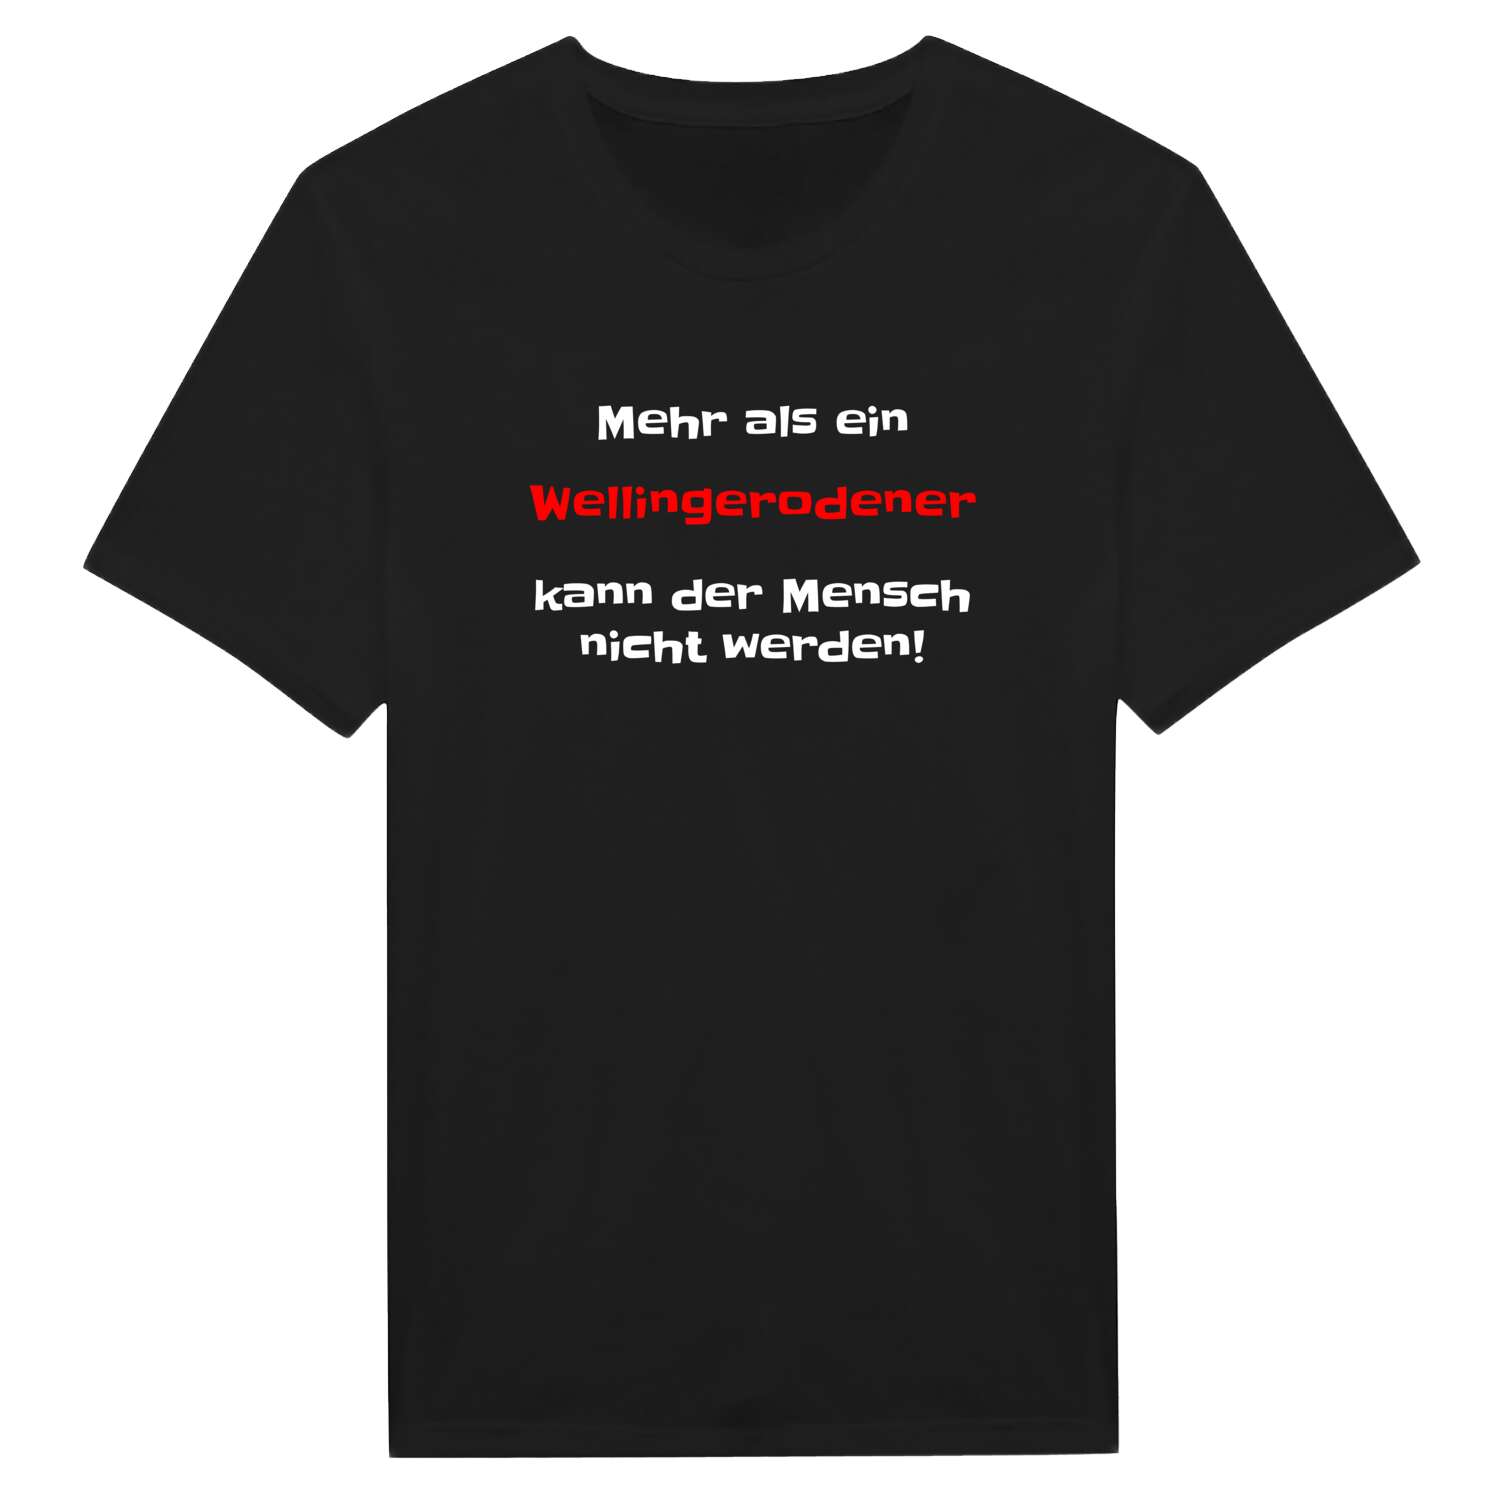 Wellingerode T-Shirt »Mehr als ein«